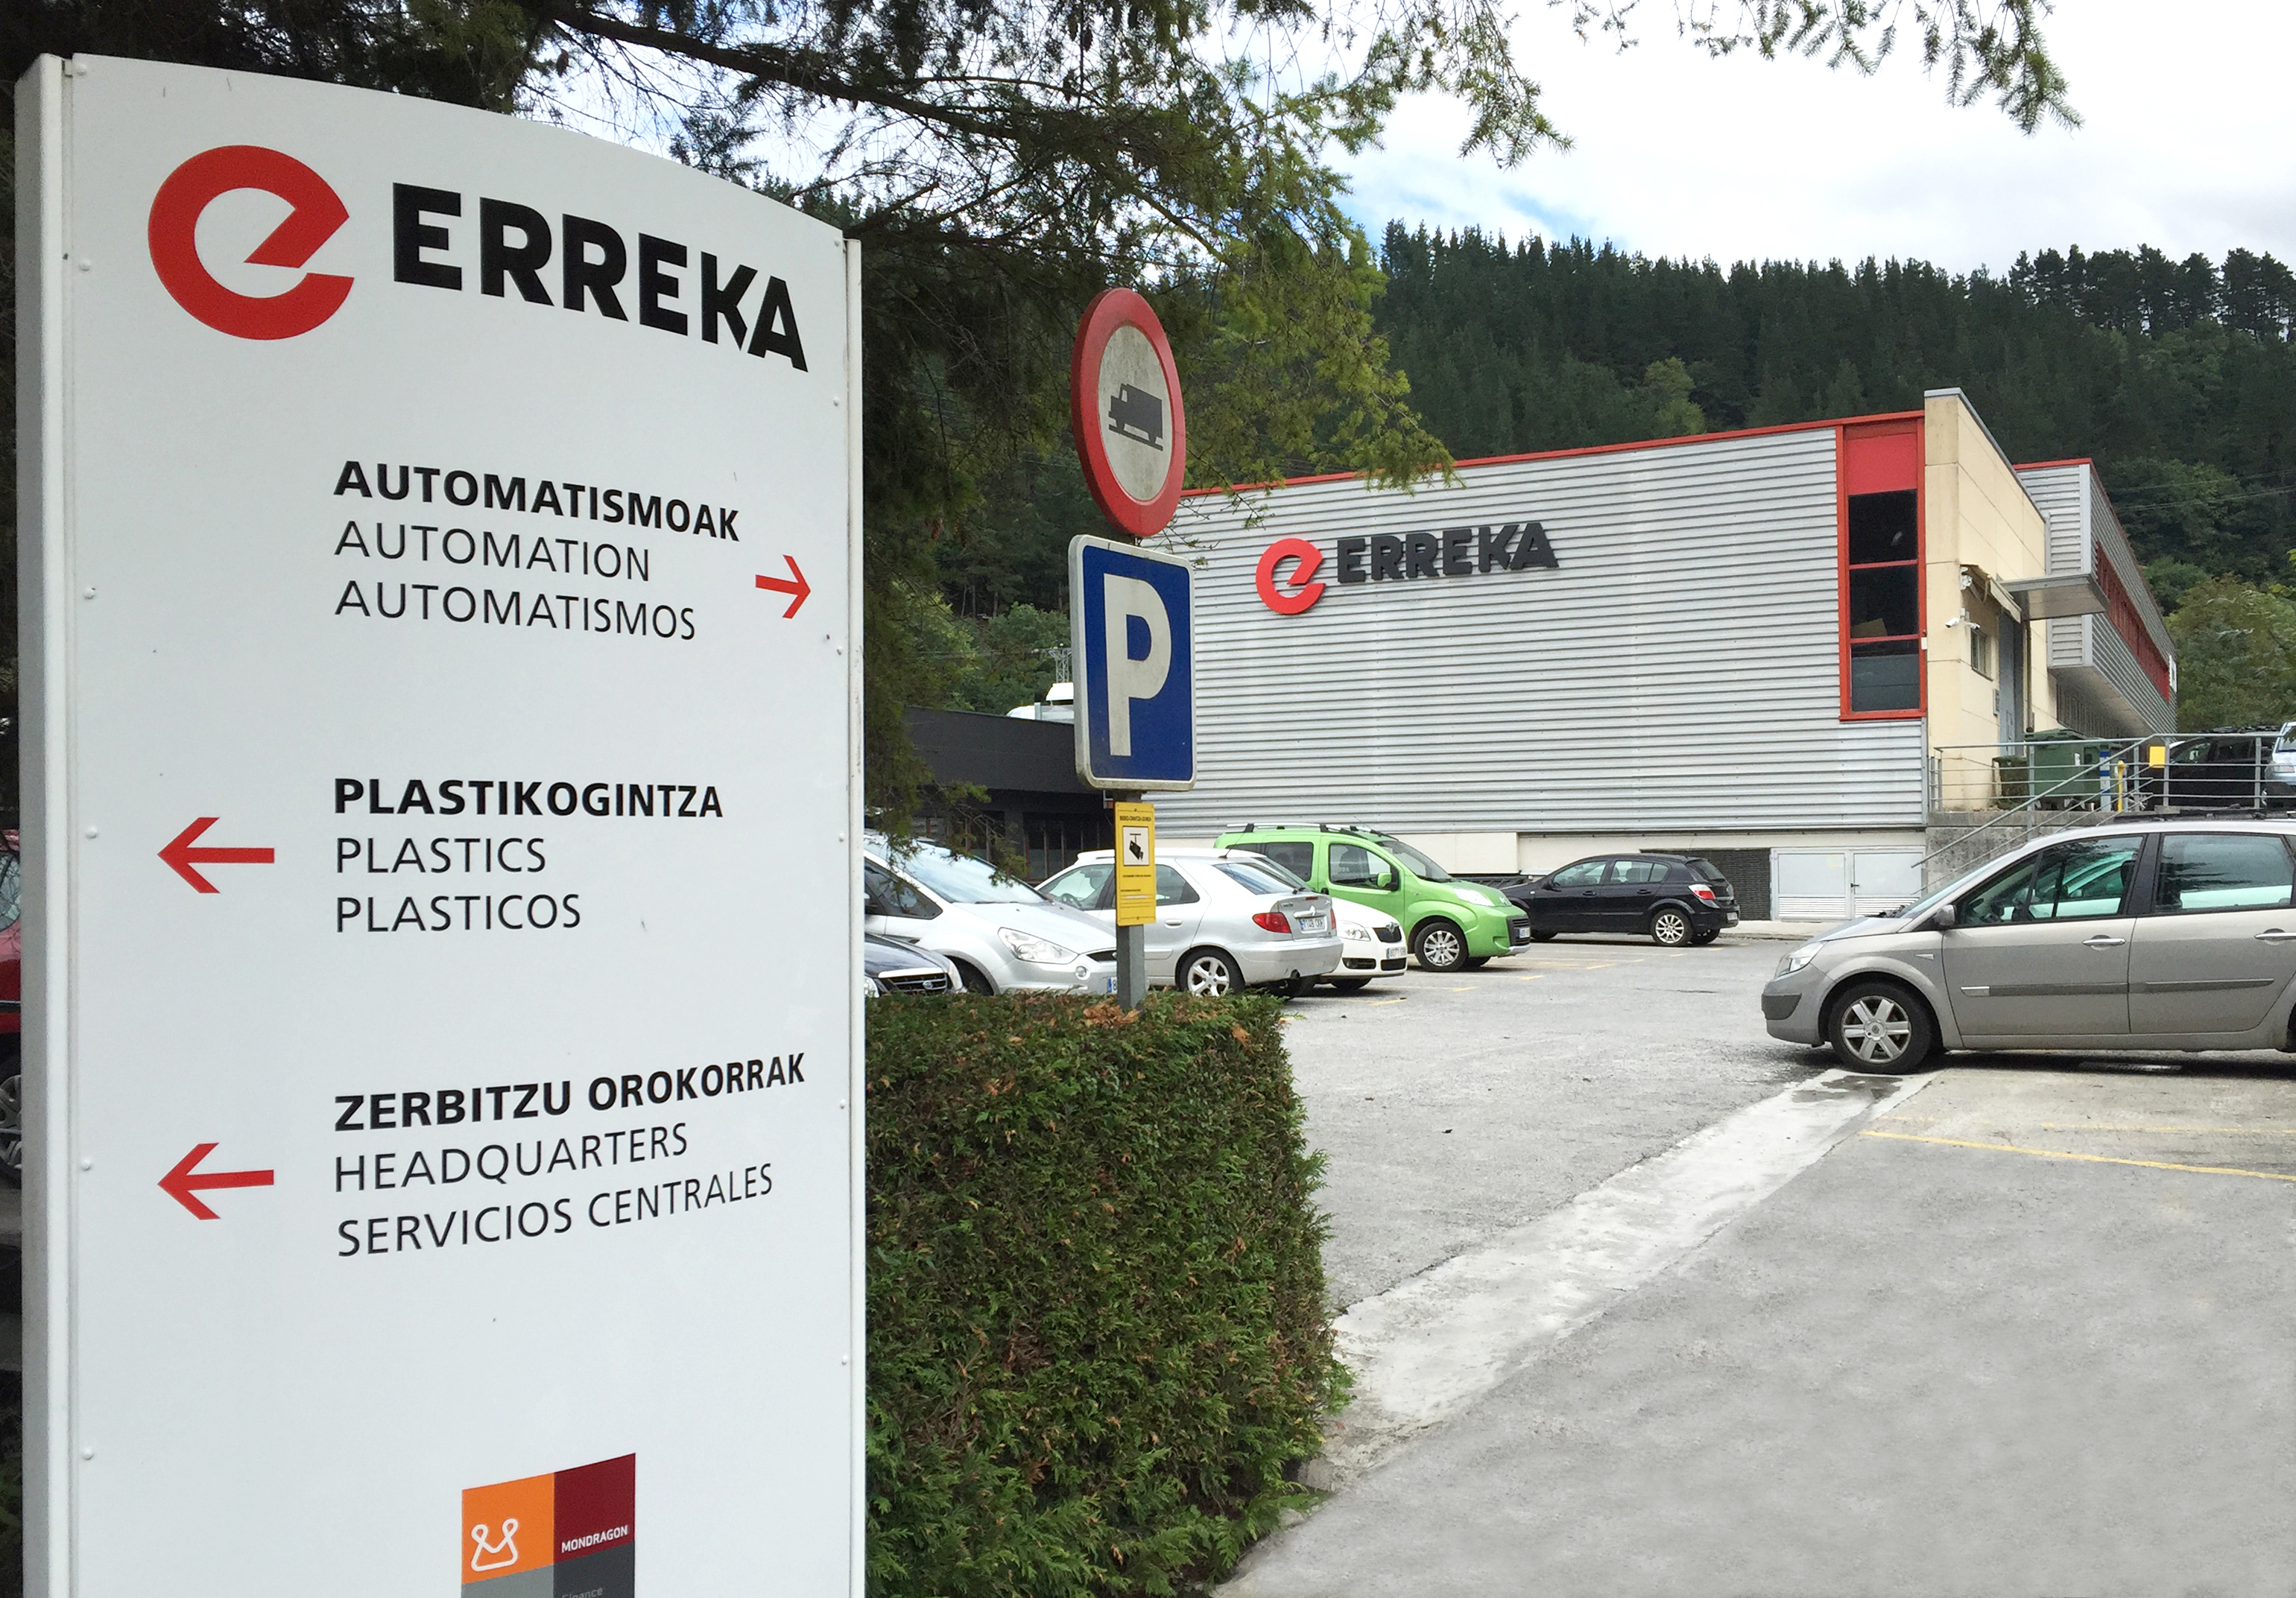 ERREKA closes a deal for 2,500 automatic platform screen doors in